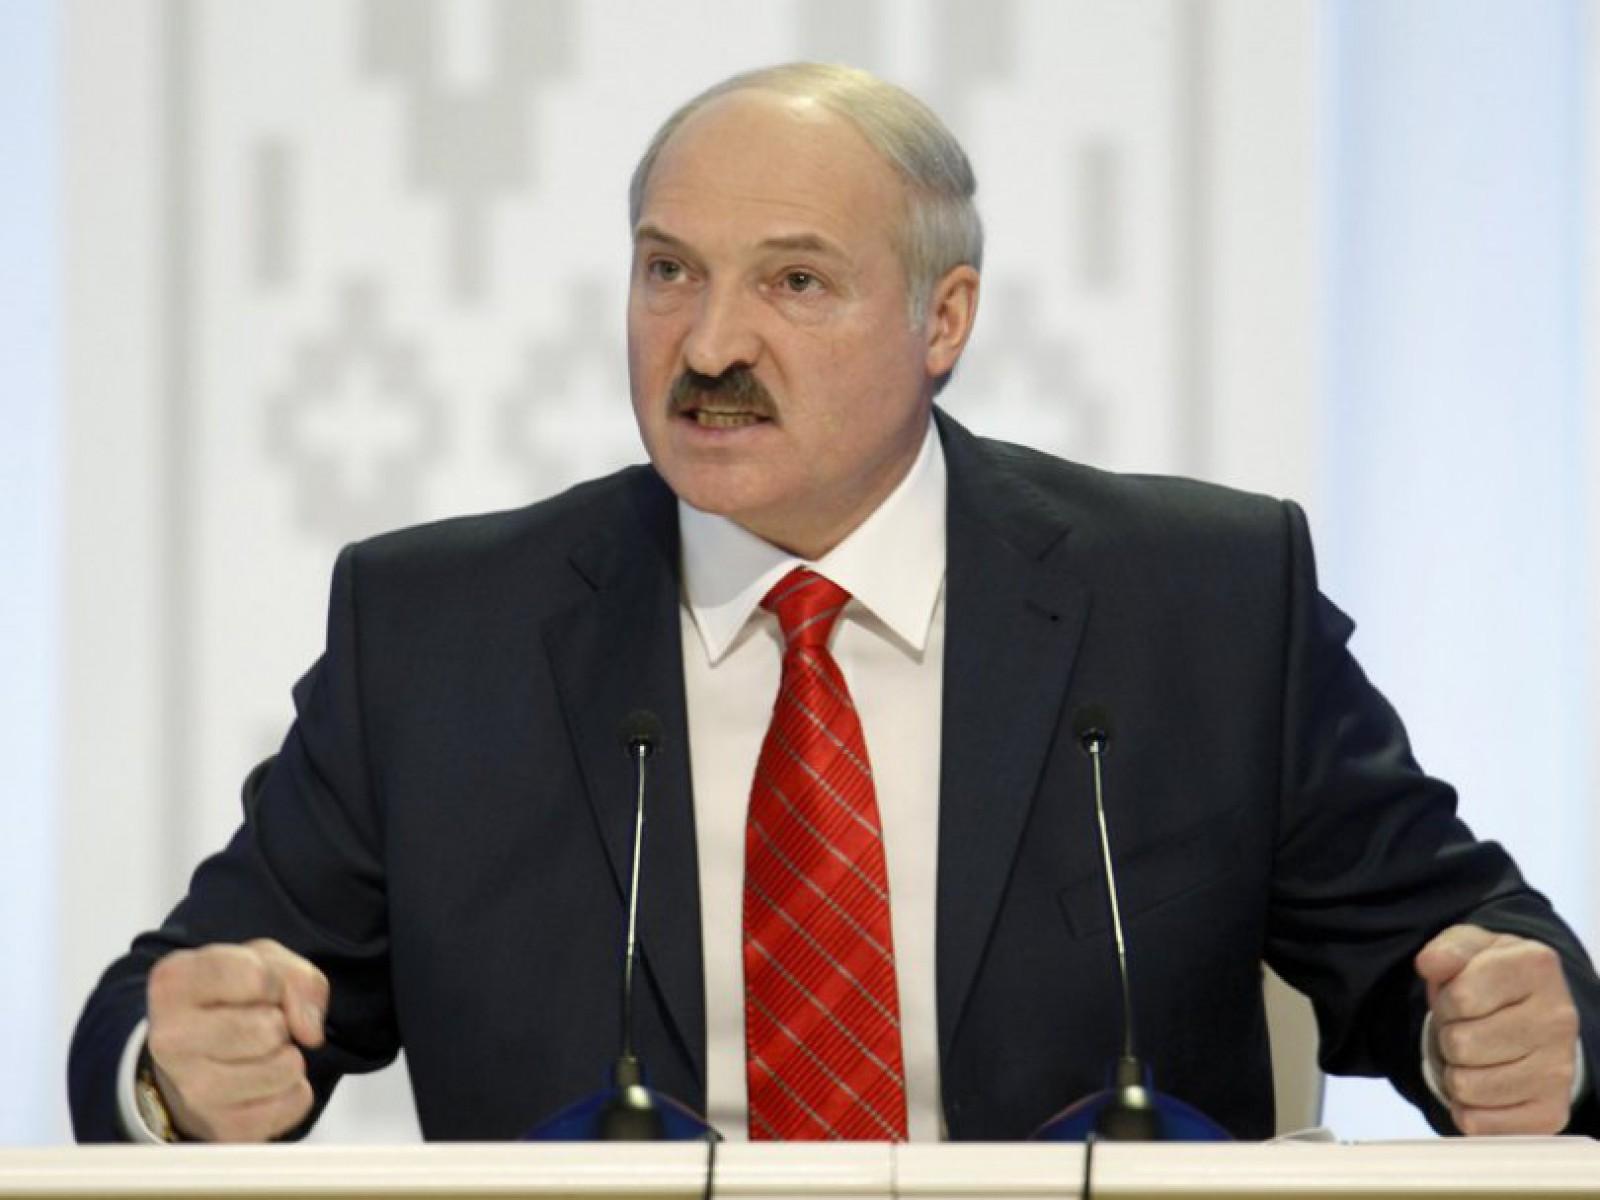 Predsjednik Bjelorusije Lukašenko zatvara političke protivnike uoči izbora, a za sve optužuje dugogodišnje saveznike Ruse